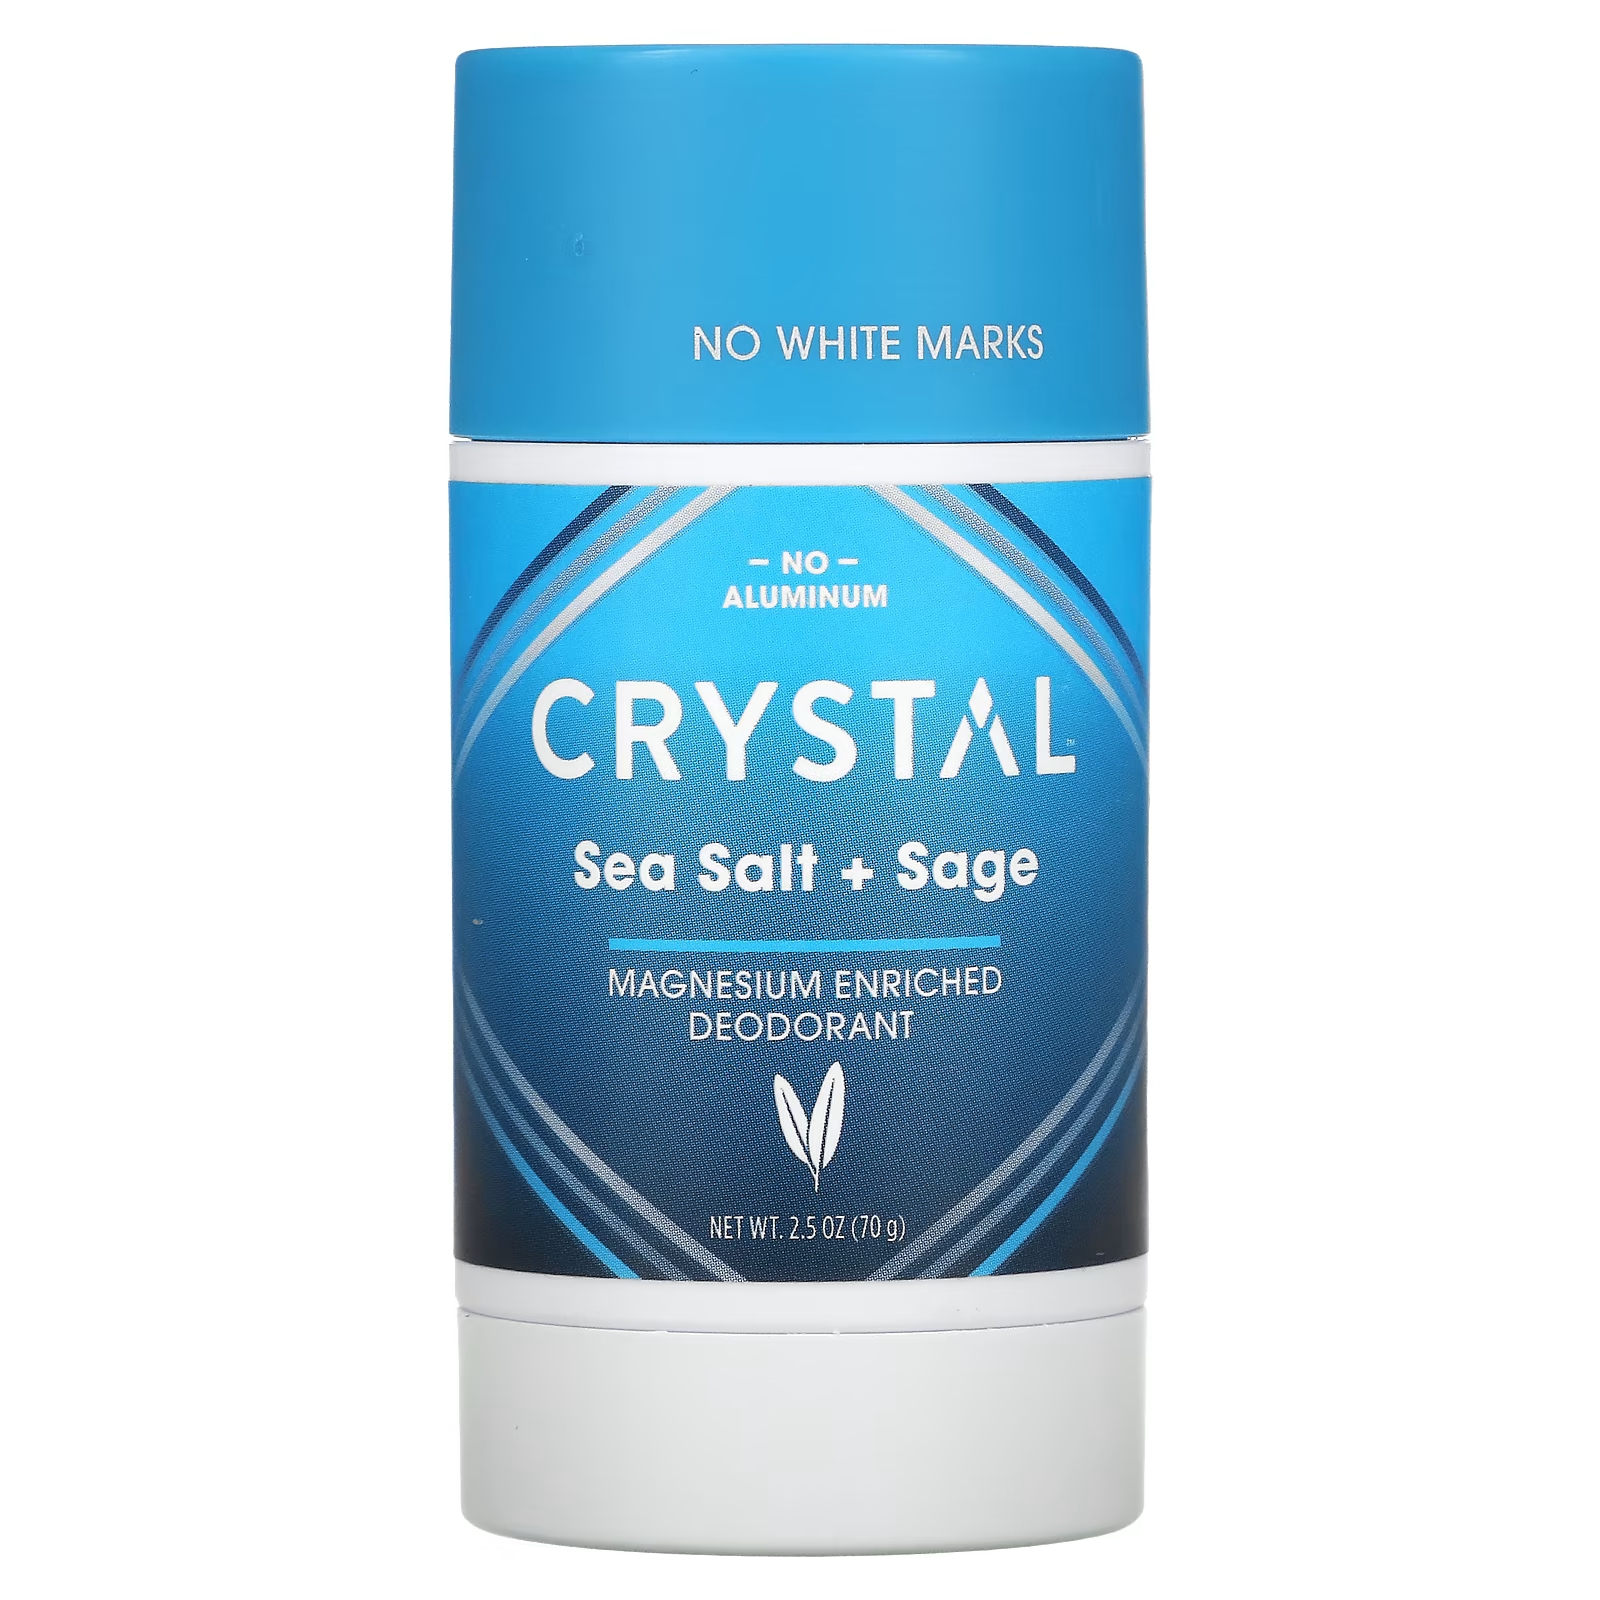 Дезодорант Crystal обогащенный магнием, морская соль + шалфей